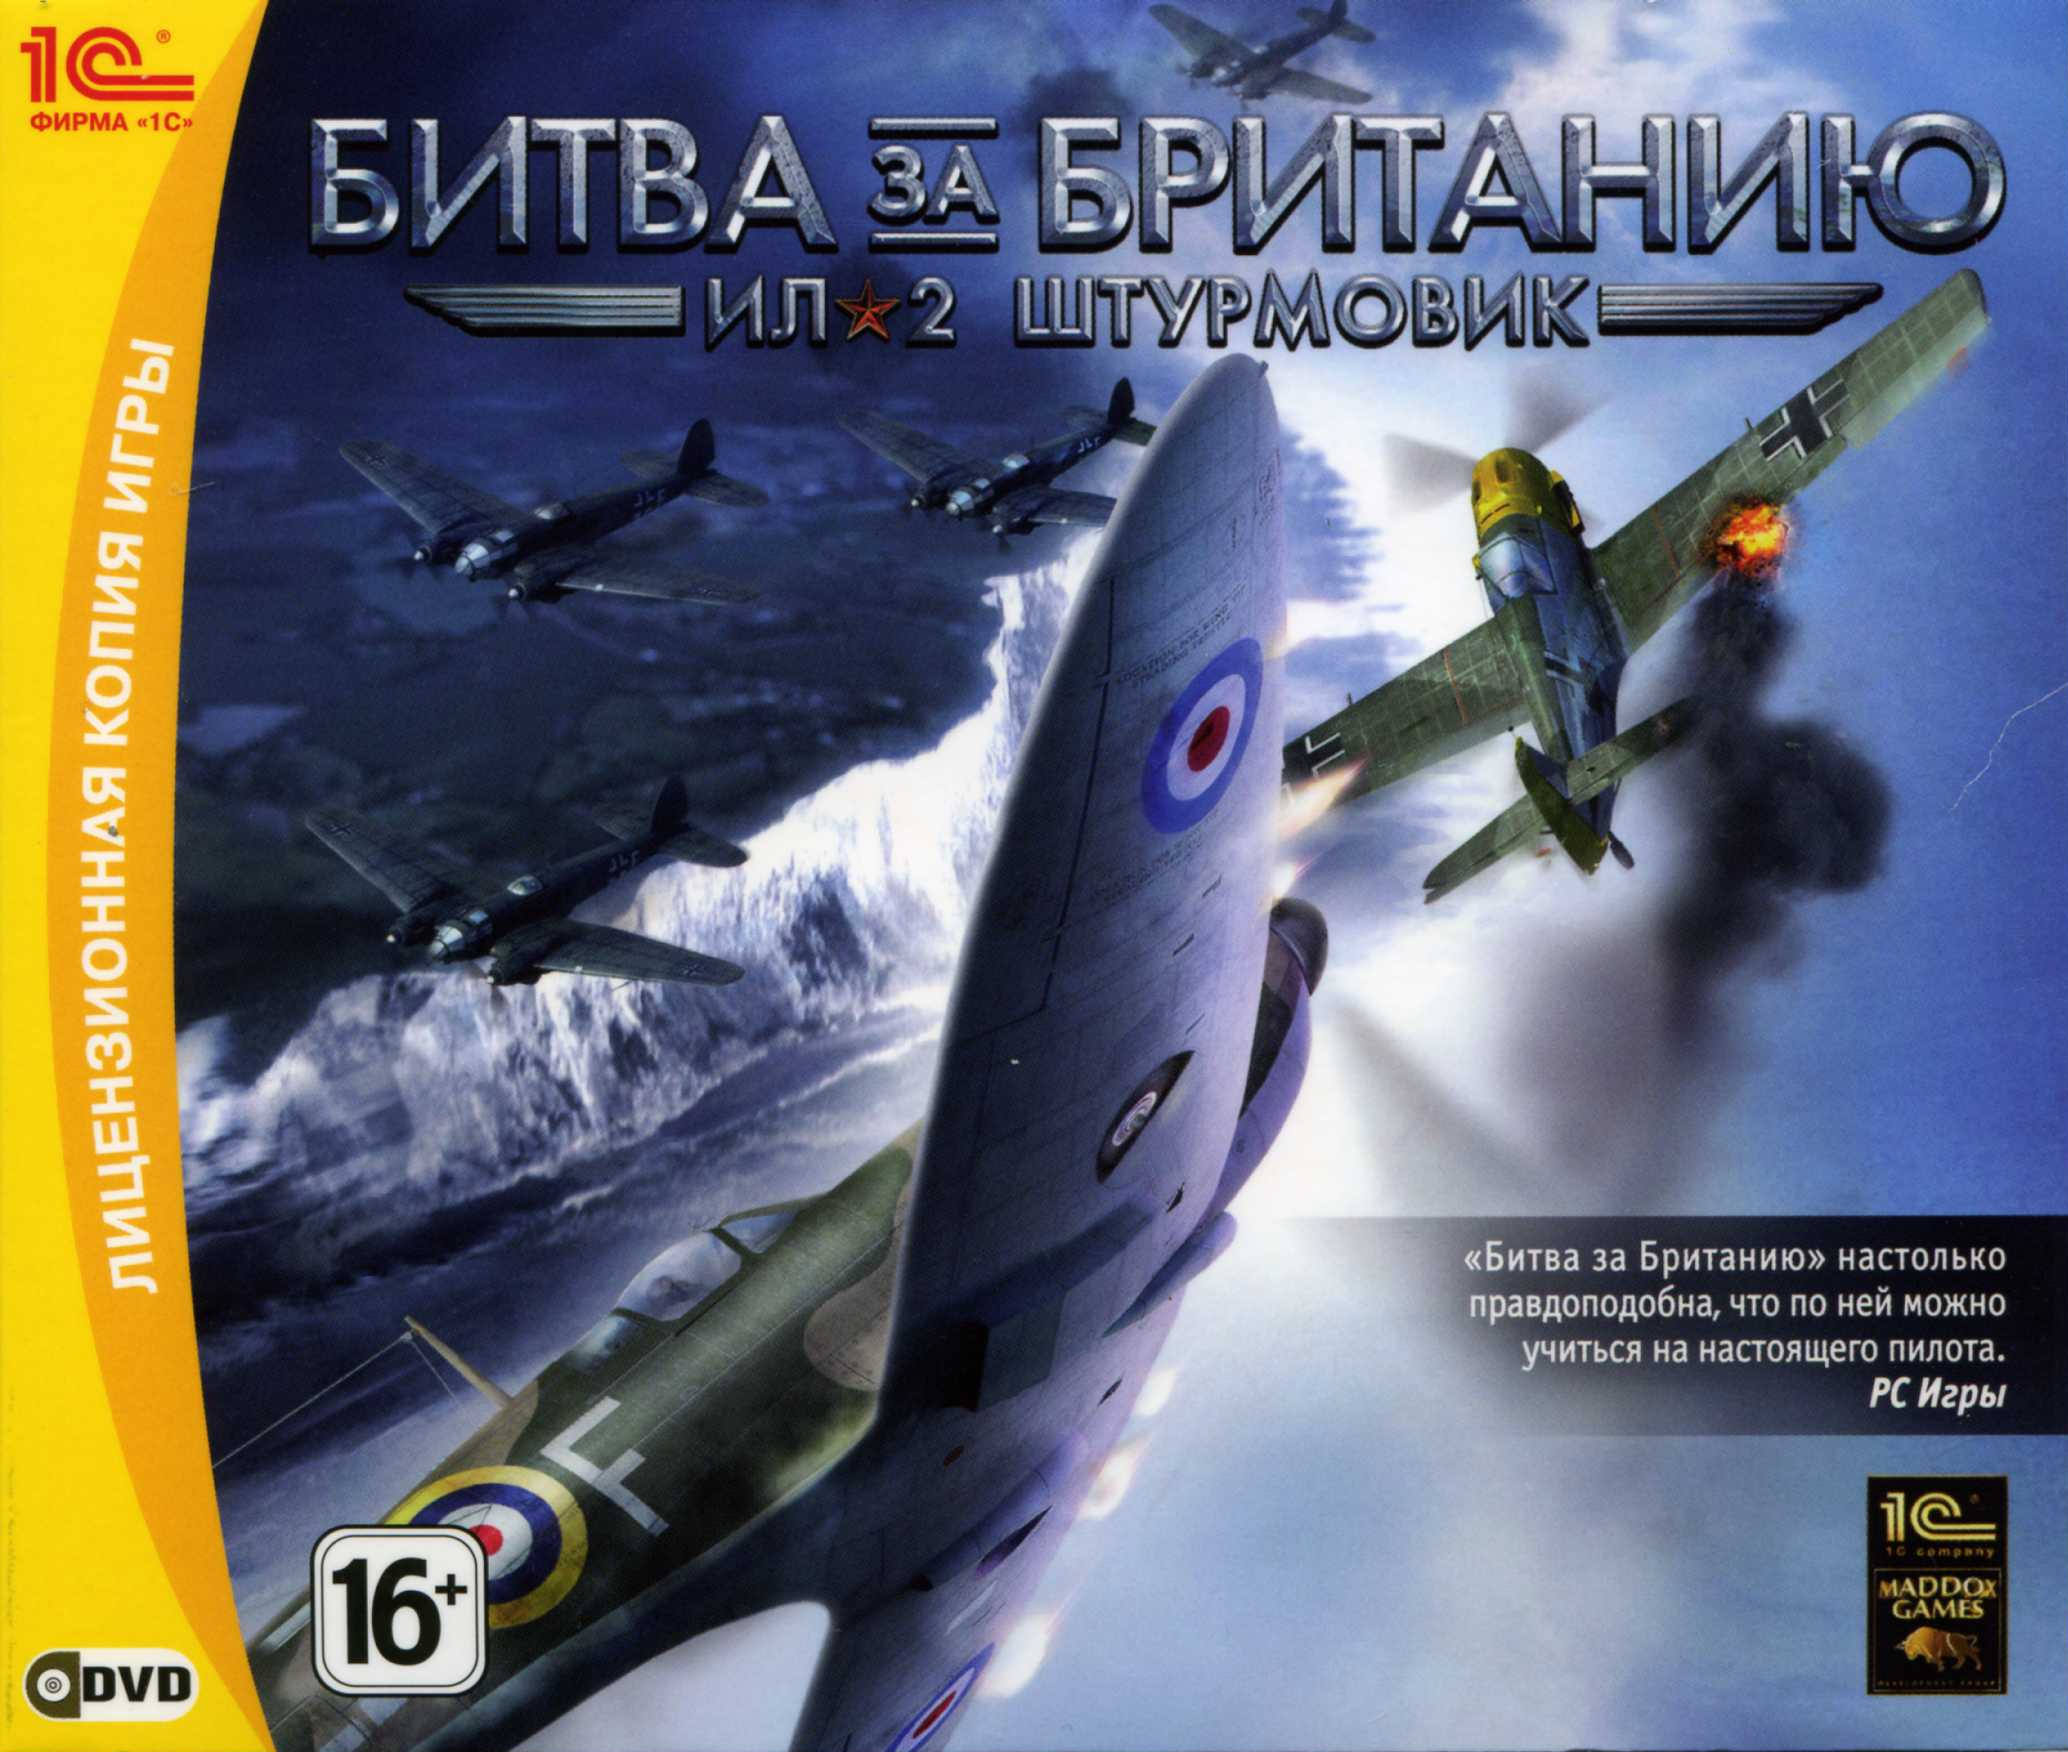 Ил-2 Штурмовик: Битва за Британию (Ключ Steam)